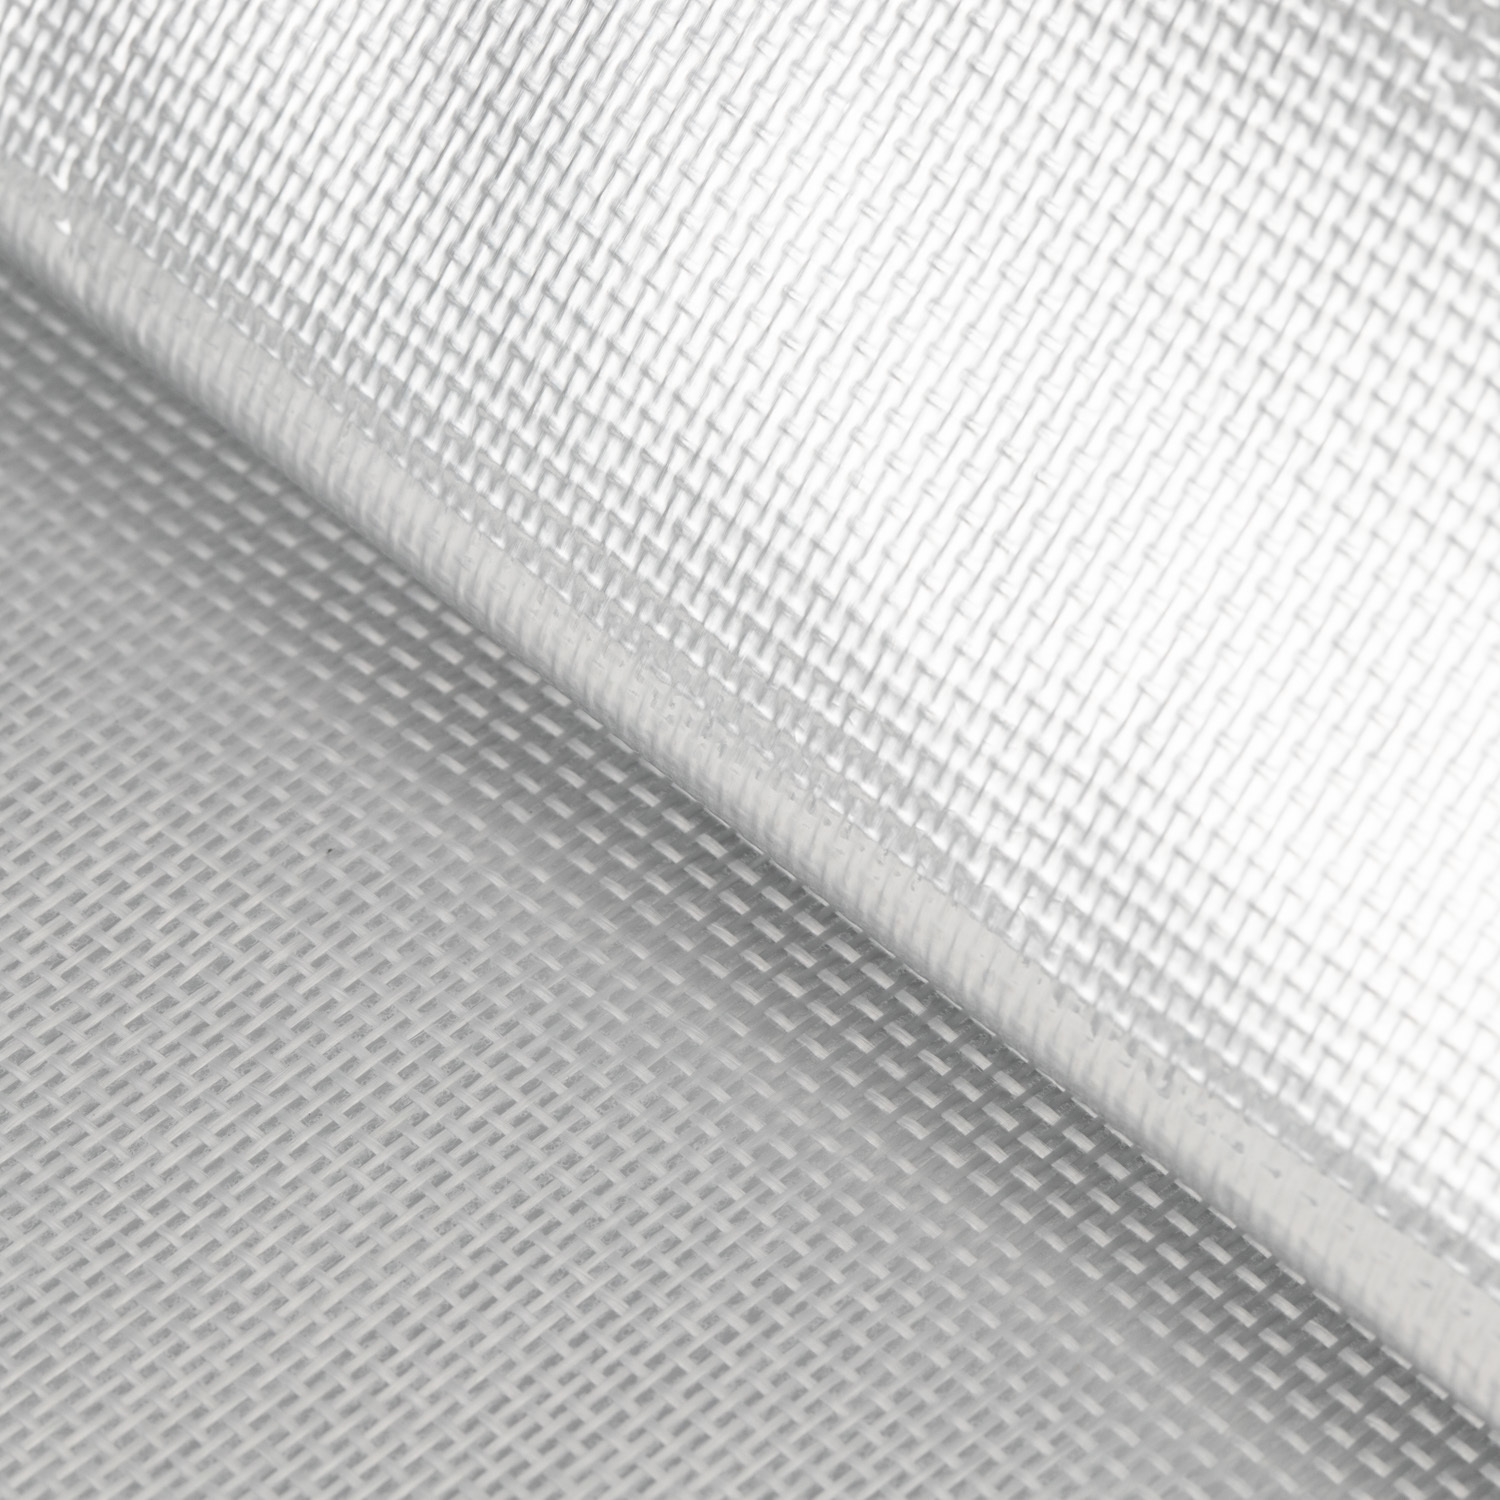 Al-75 Aluminum Foil Fireproof Cloth